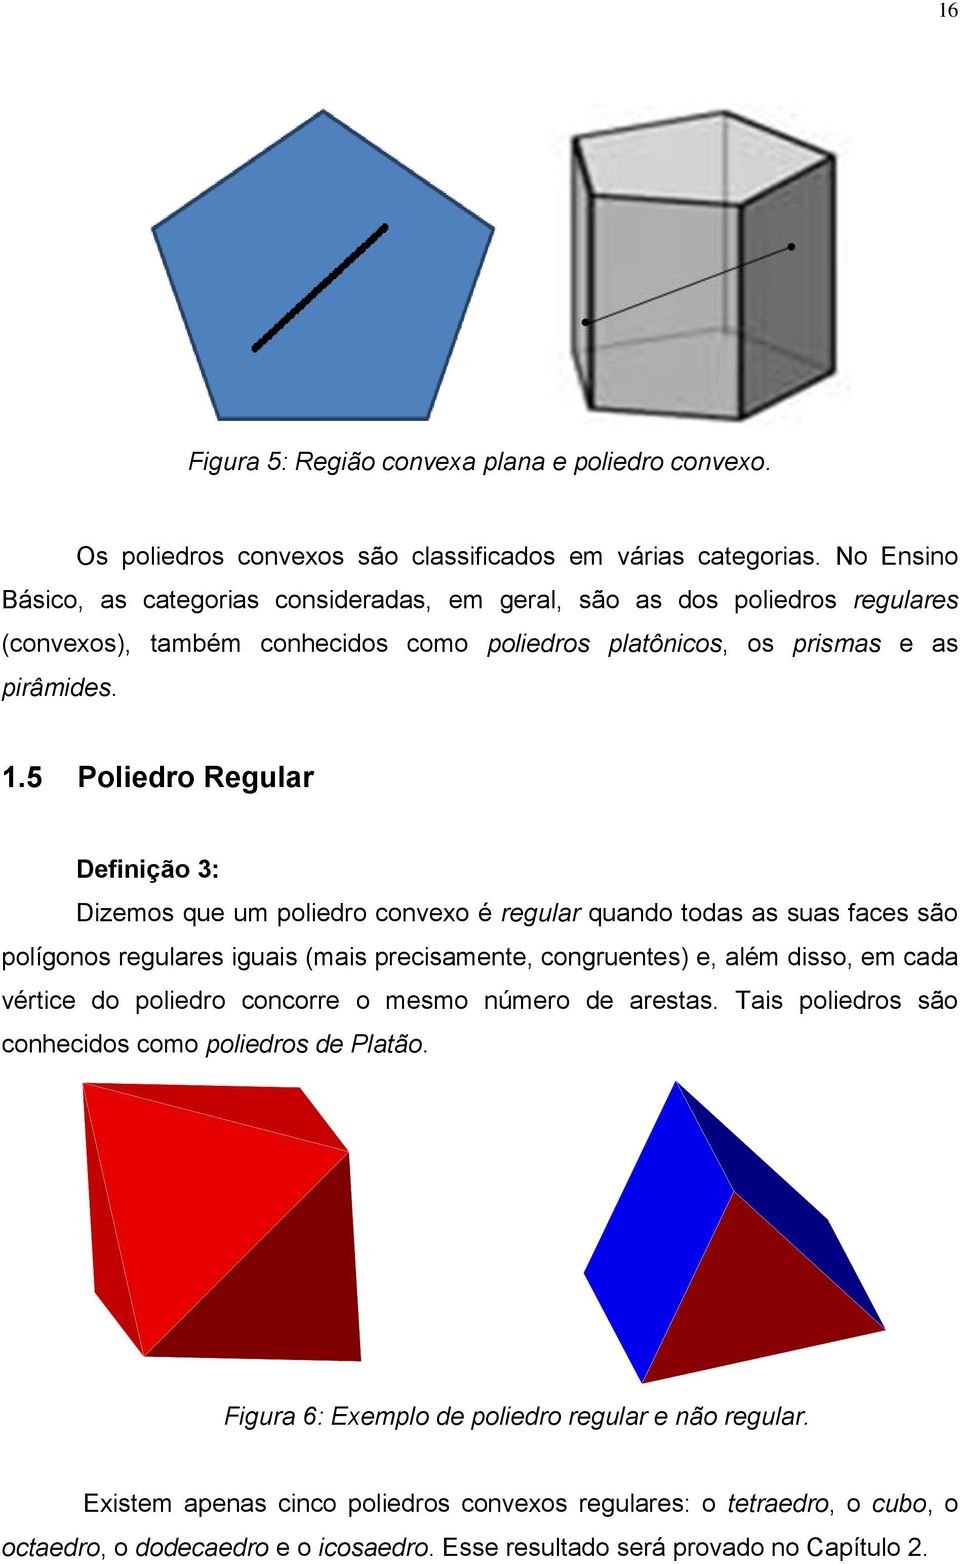 5 Poliedro Regular Definição 3: Dizemos que um poliedro convexo é regular quando todas as suas faces são polígonos regulares iguais (mais precisamente, congruentes) e, além disso, em cada vértice do